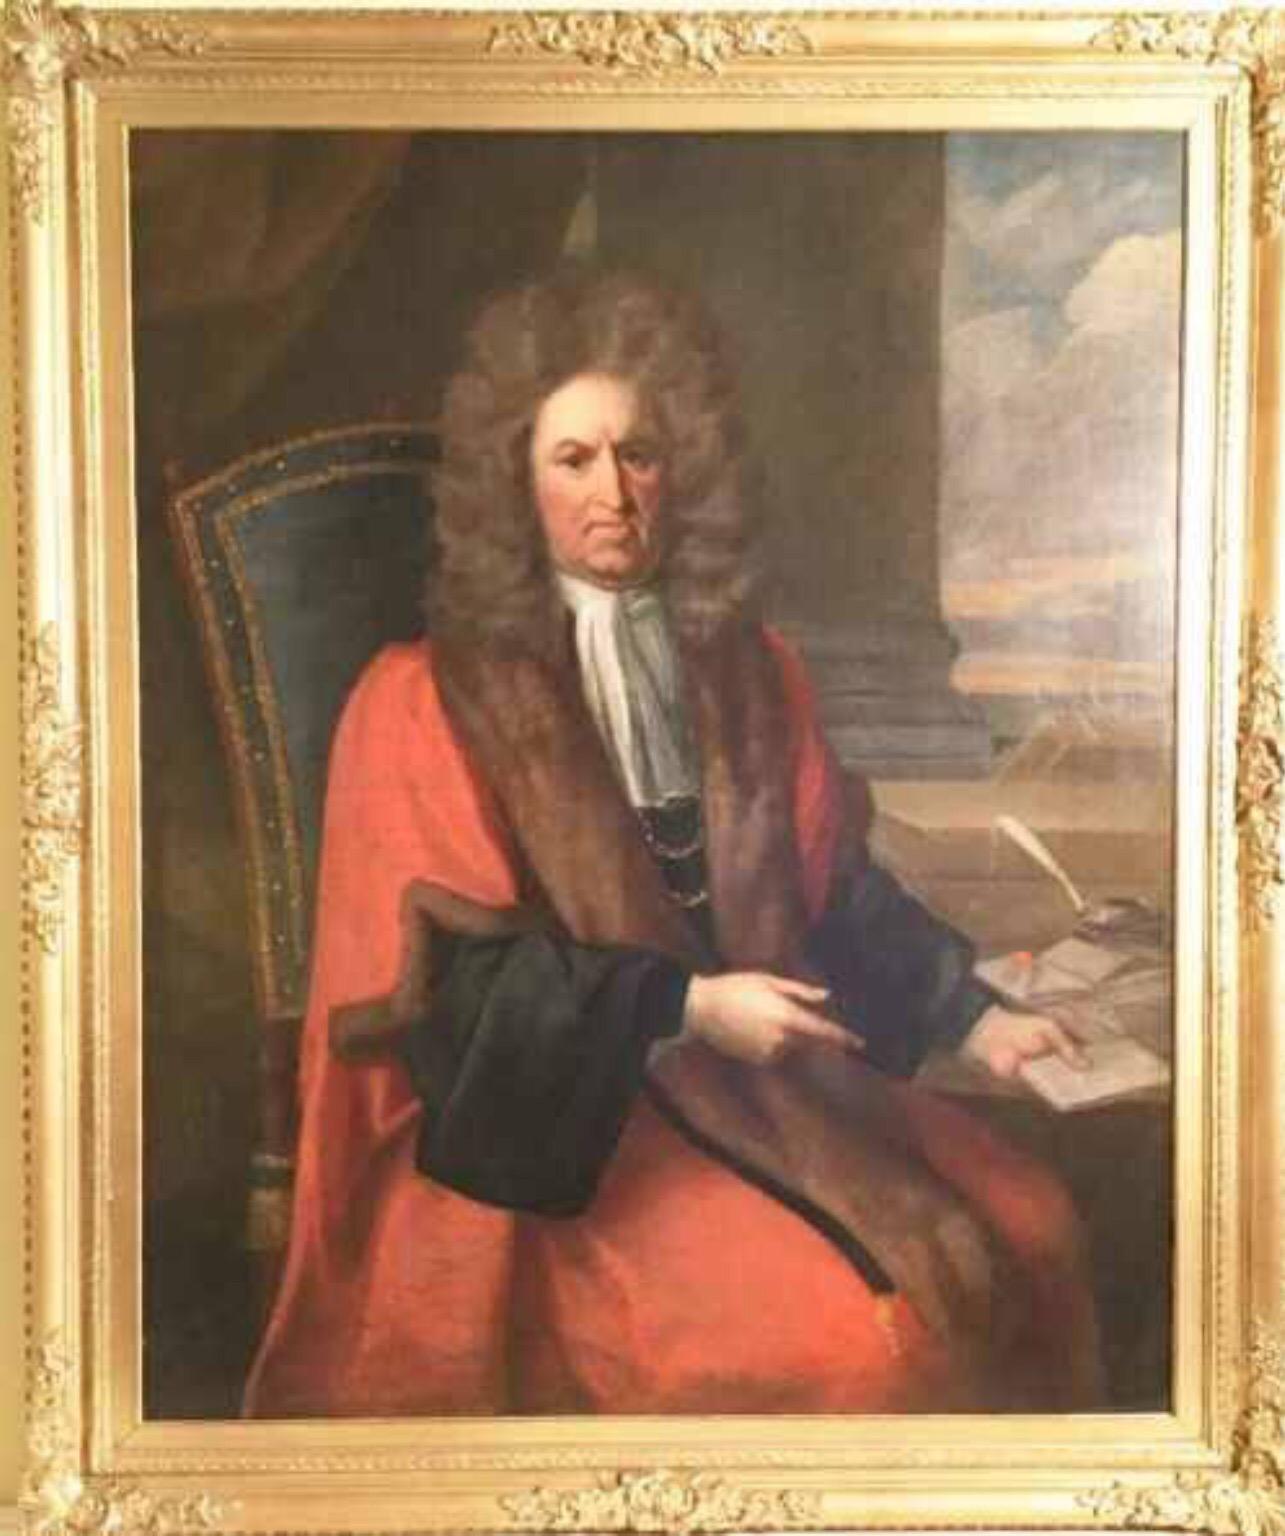 17th century judge